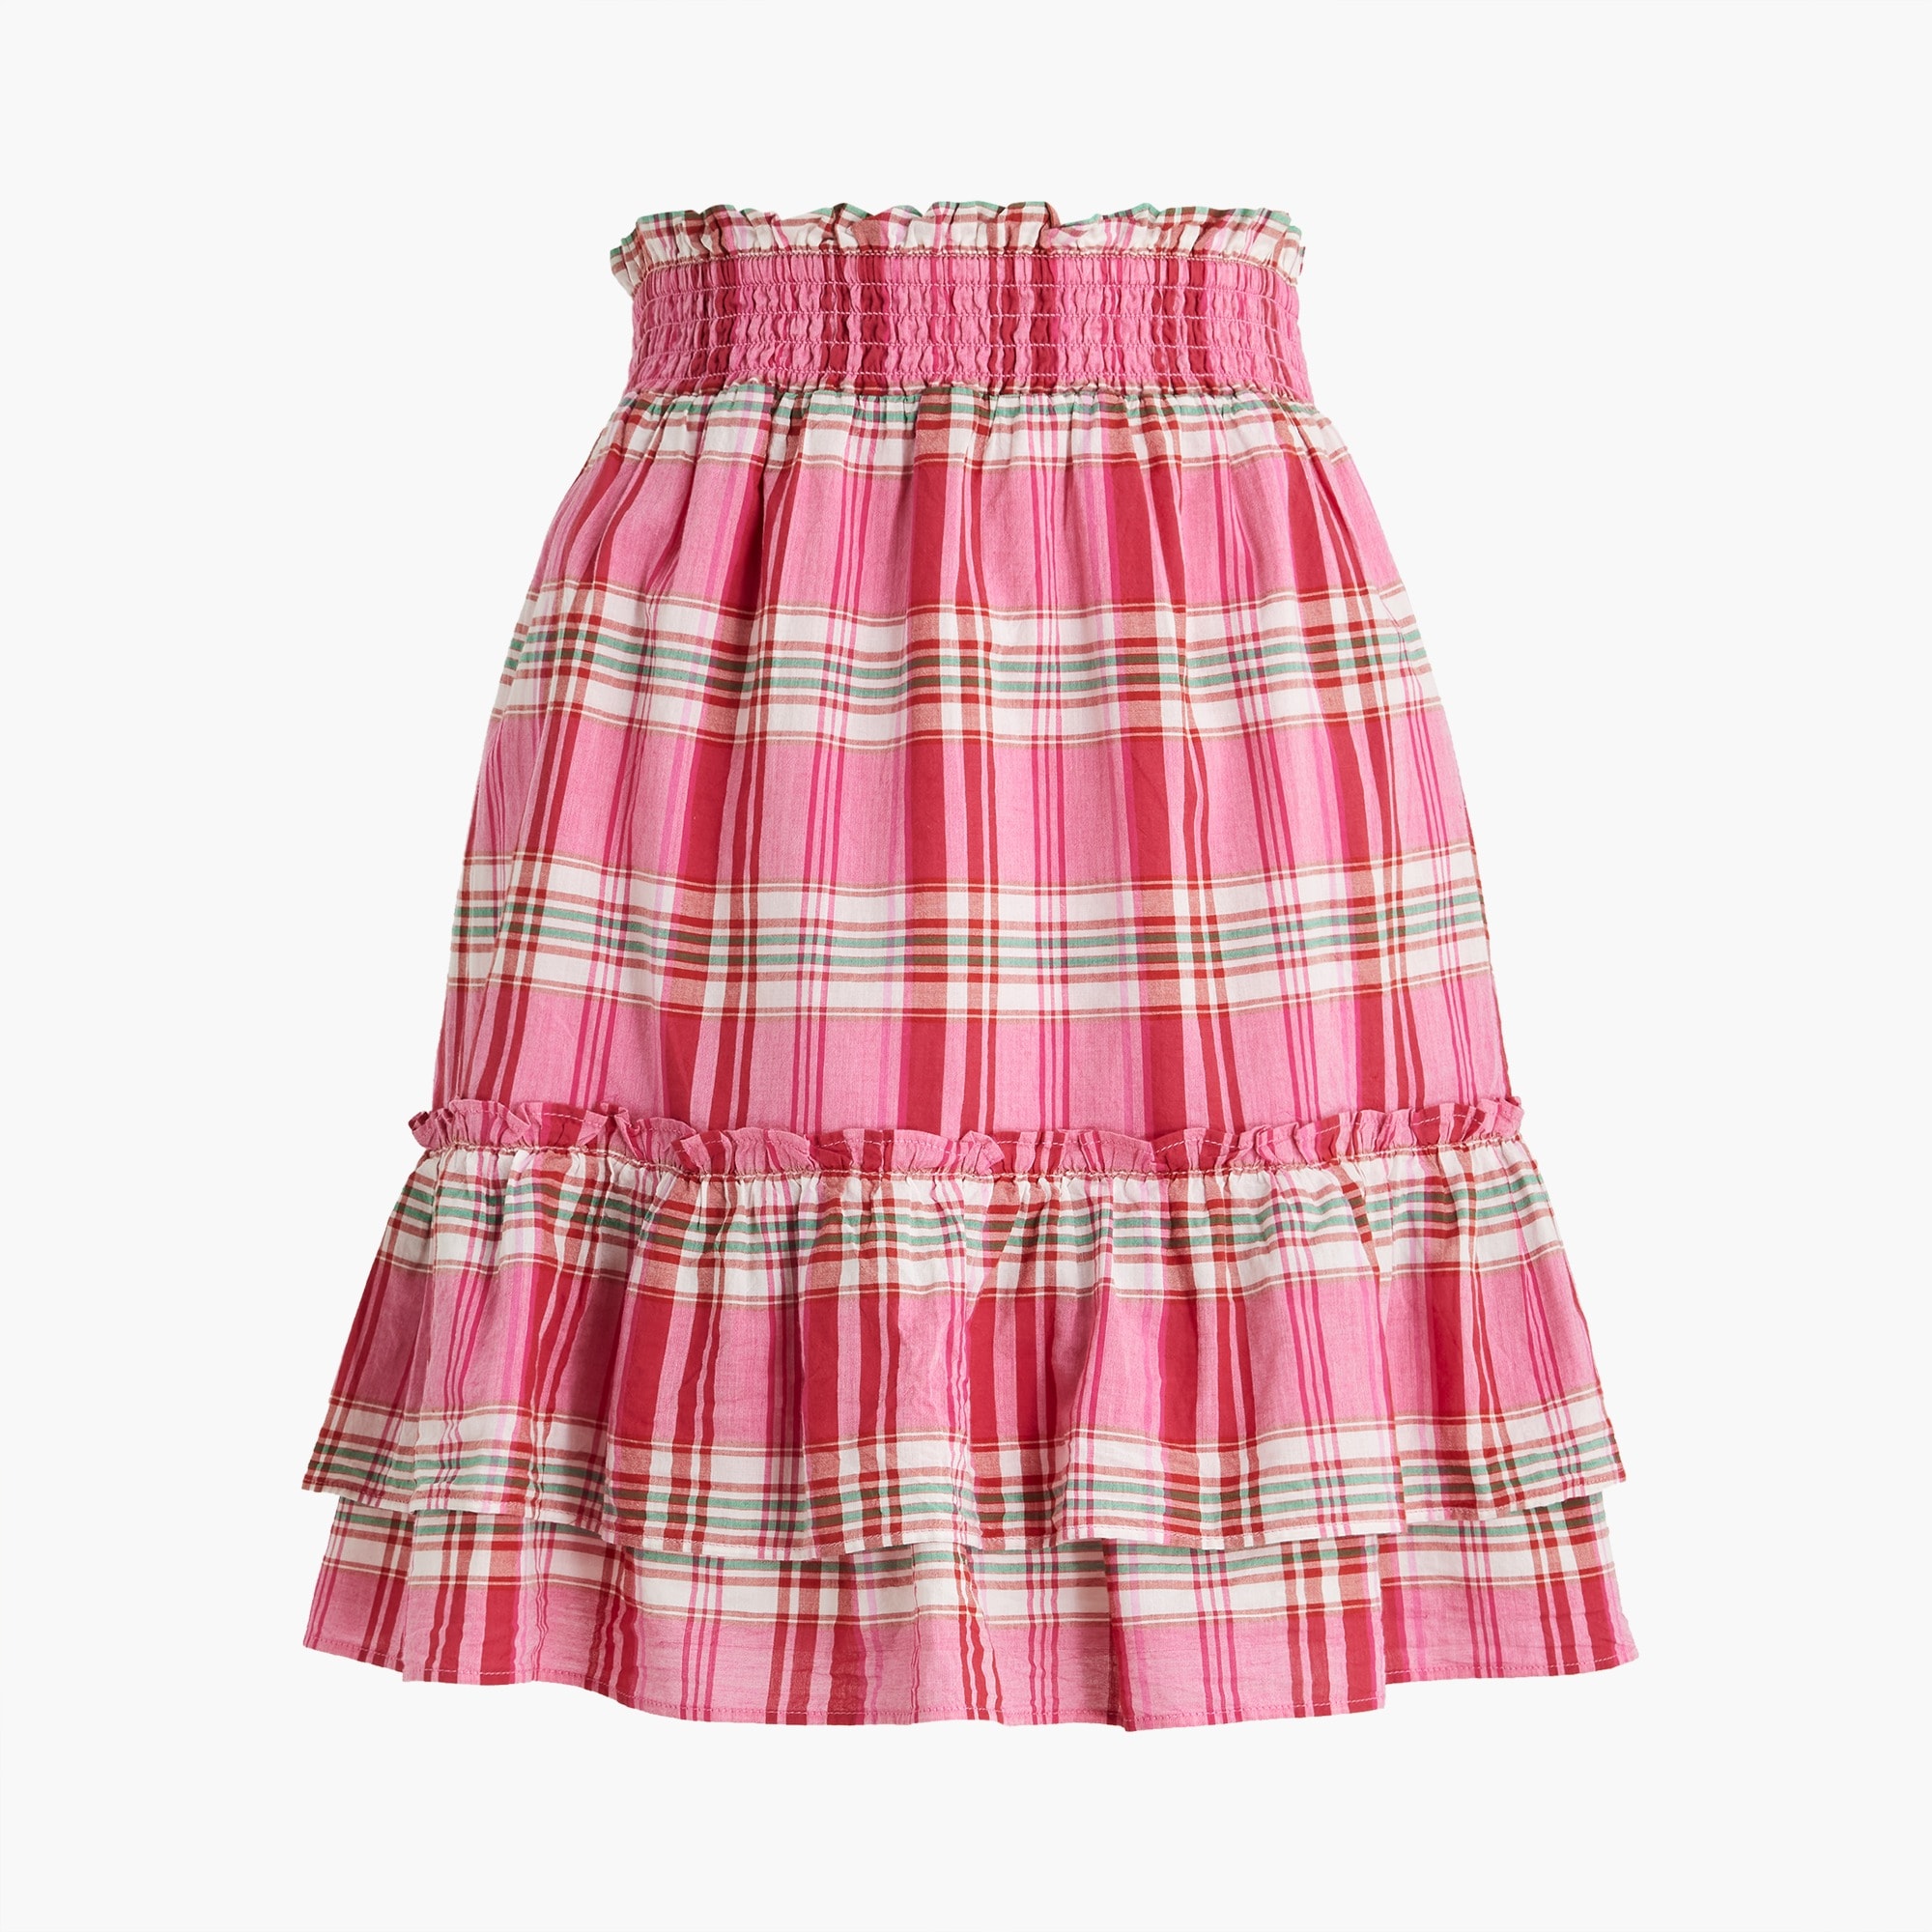  Ruffle mini skirt